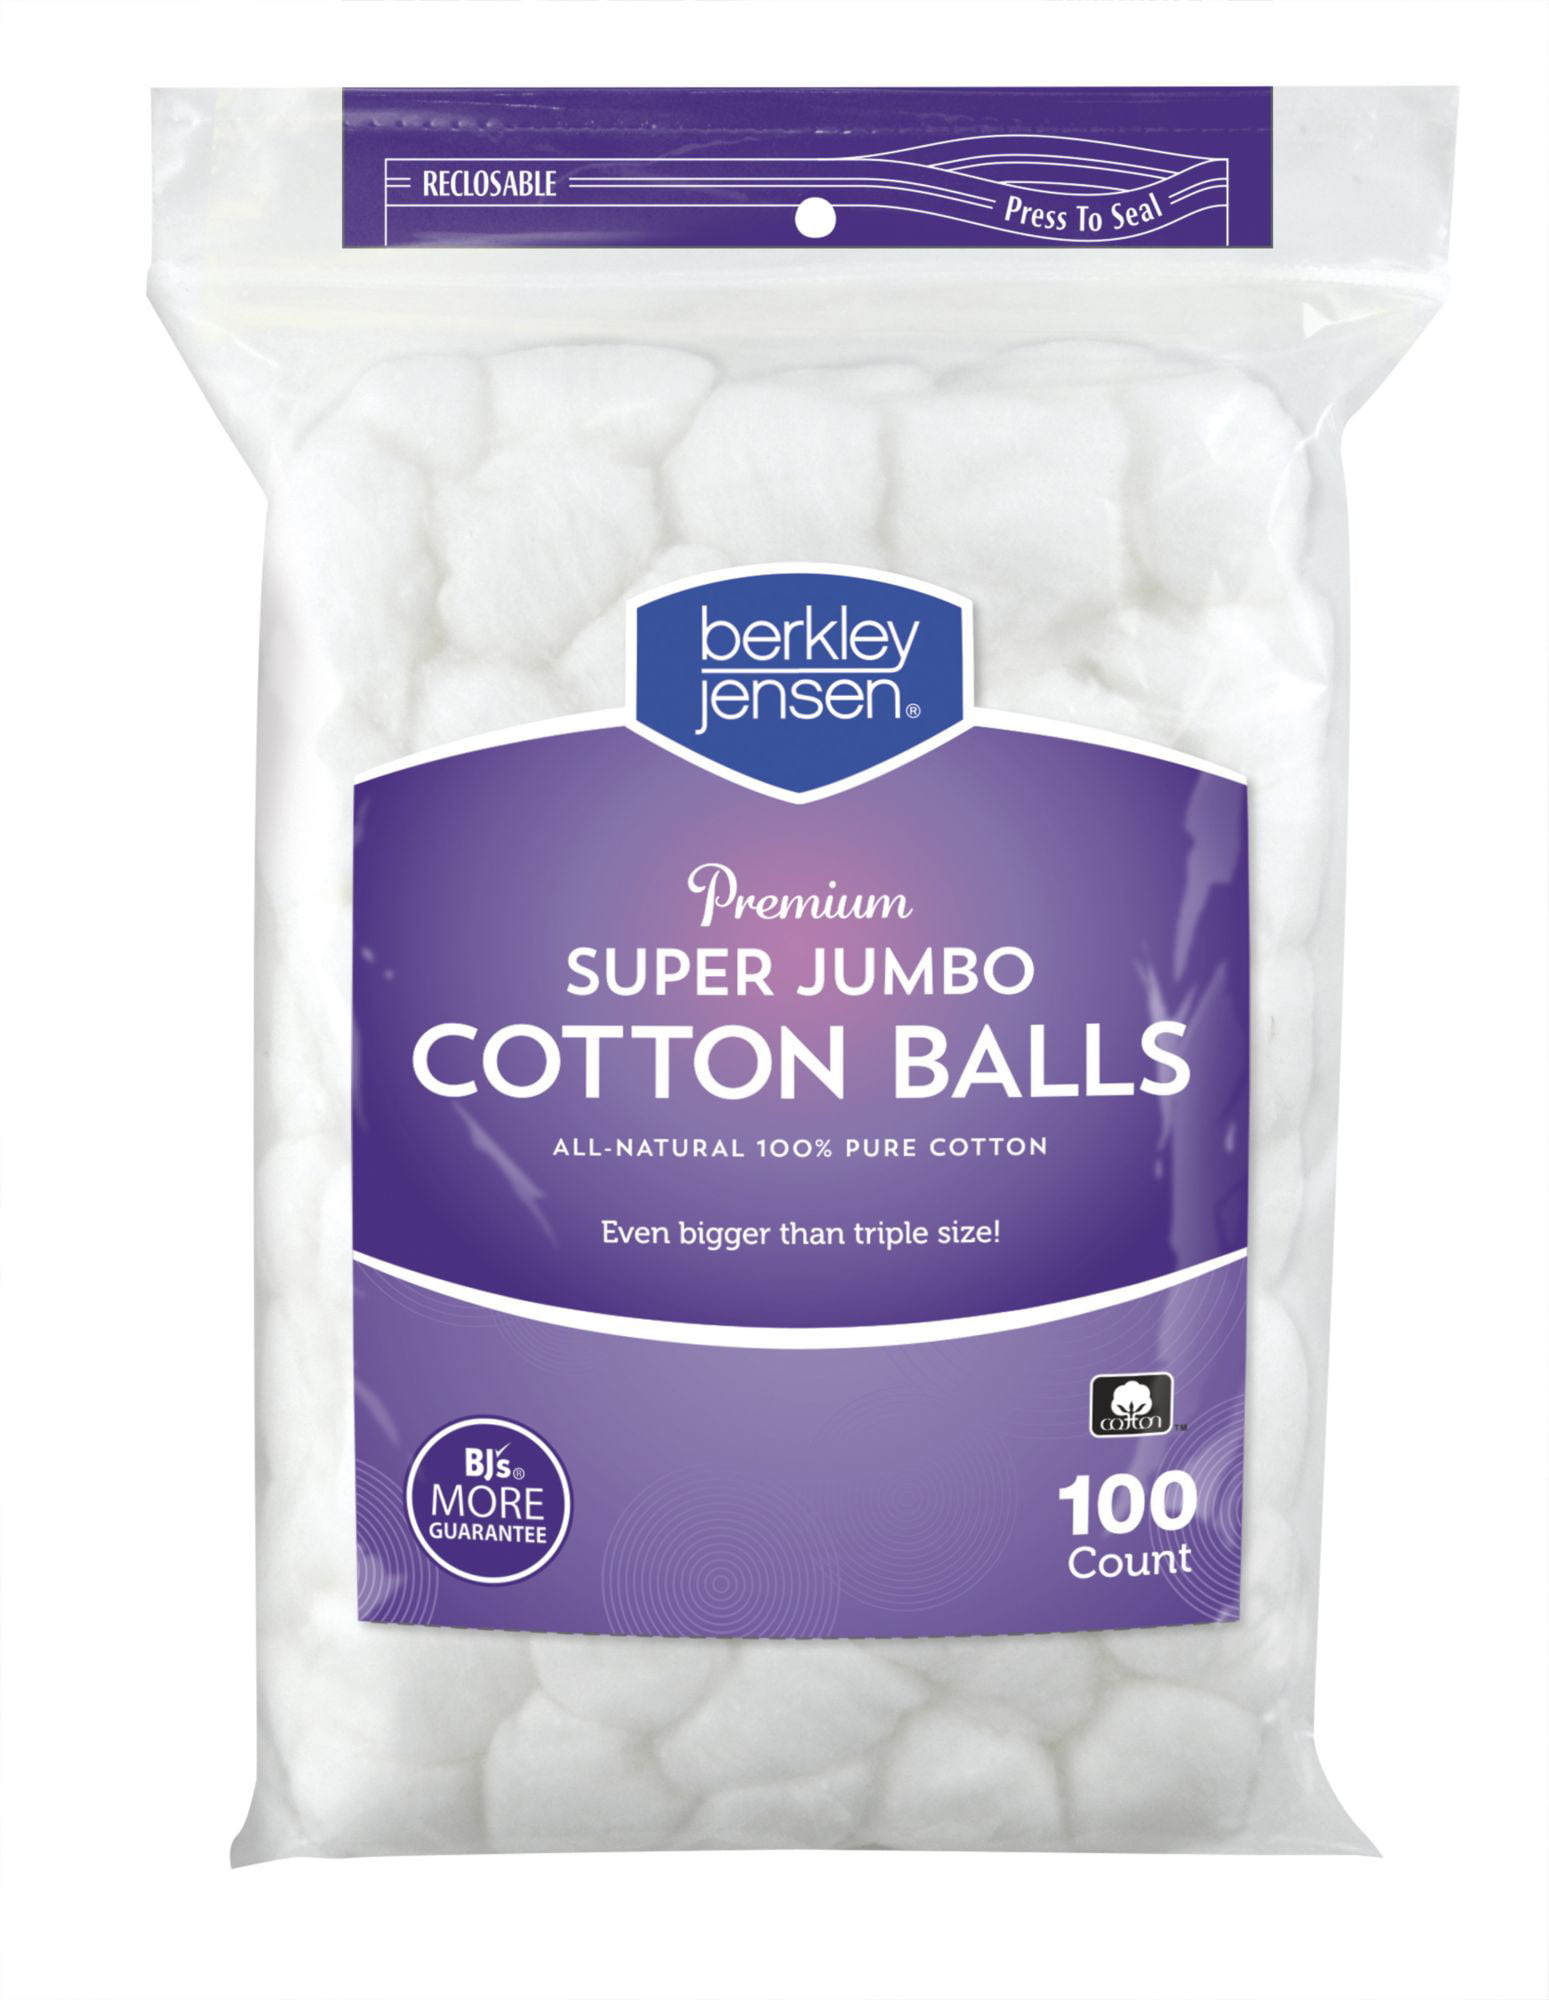 Order now Berkley Jensen Cotton Balls, 400 ct.